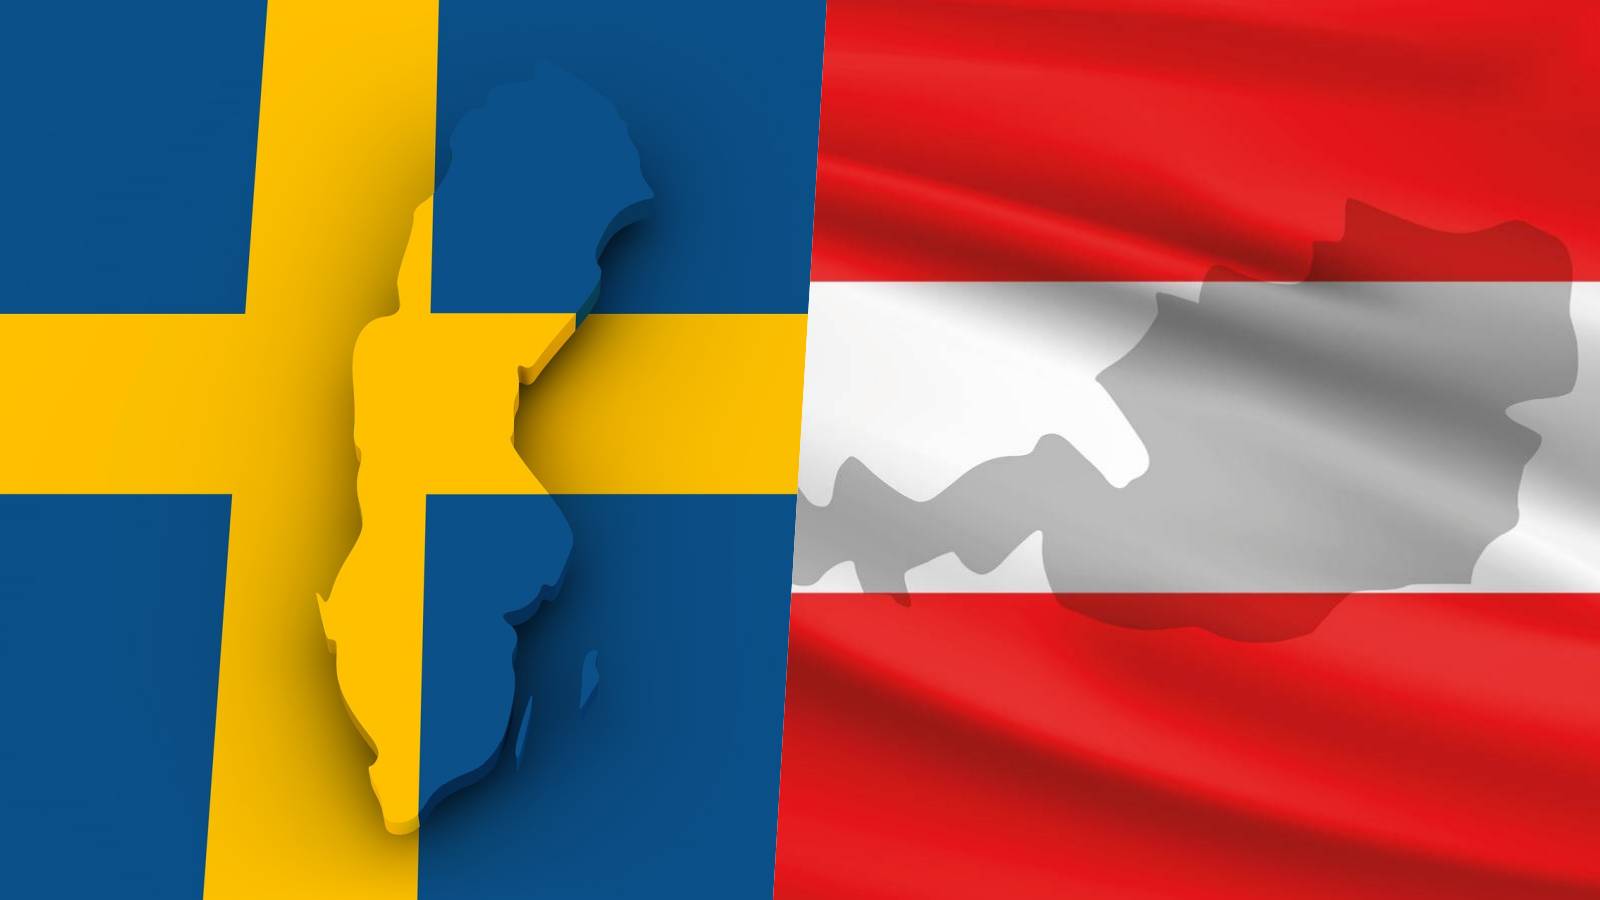 Austria pomogła Włochom Szwecji Ogłoszenie w ostatniej chwili zapobiegające przystąpieniu Rumunii do strefy Schengen